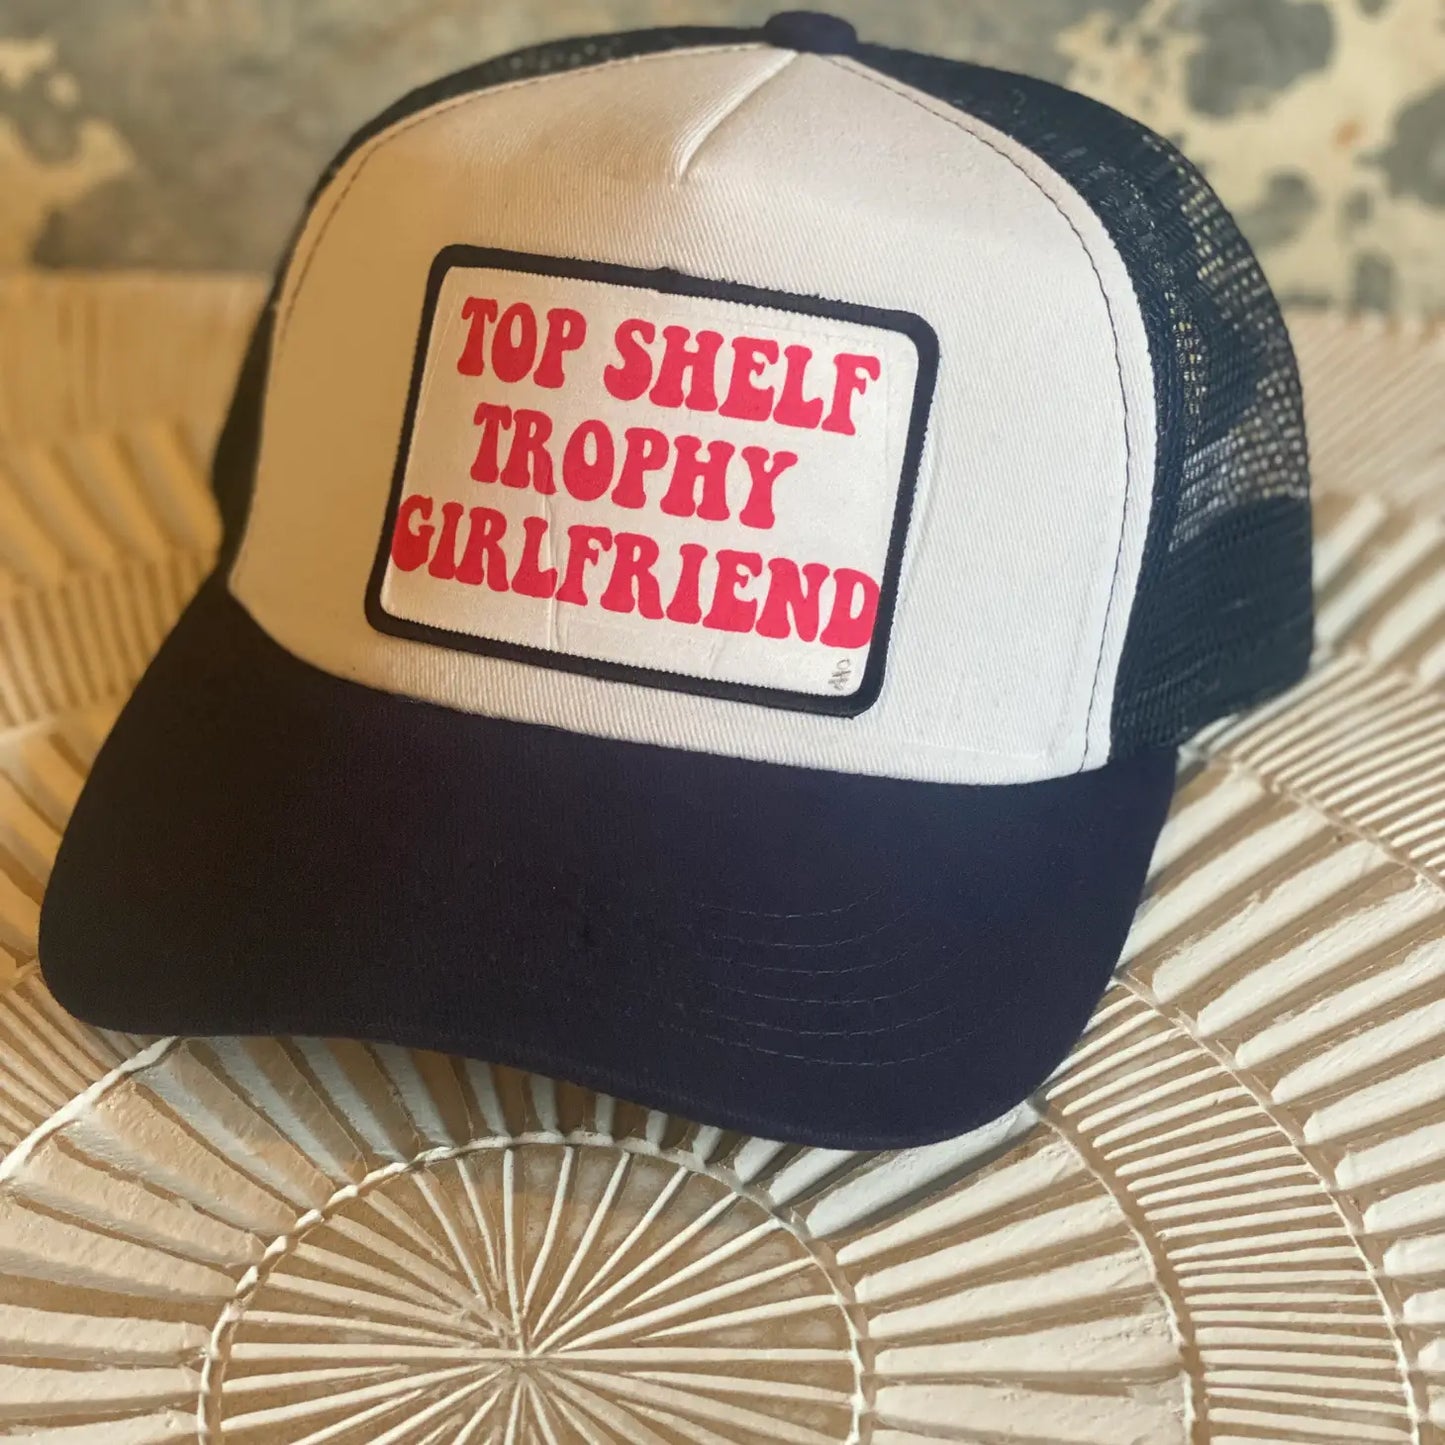 Top Shelf Trophy Girlfriend Trucker Hat